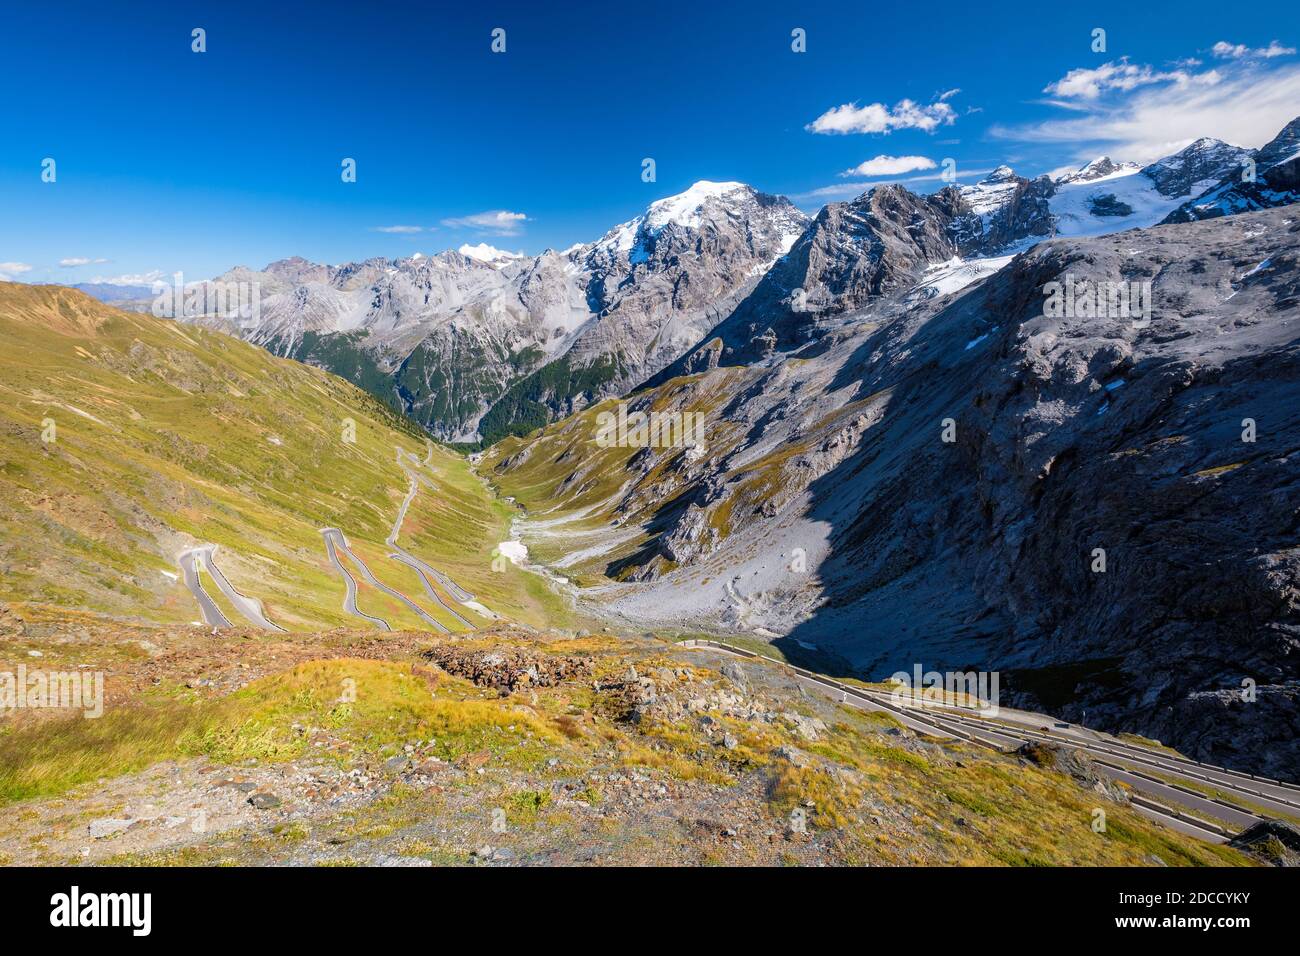 Le col du Stelvio est un col de montagne dans l'Ortler alpes dans le Tyrol du Sud et se connecte à l'Umbrail Suisse Passer en direction de la vallée Val Müstair Banque D'Images